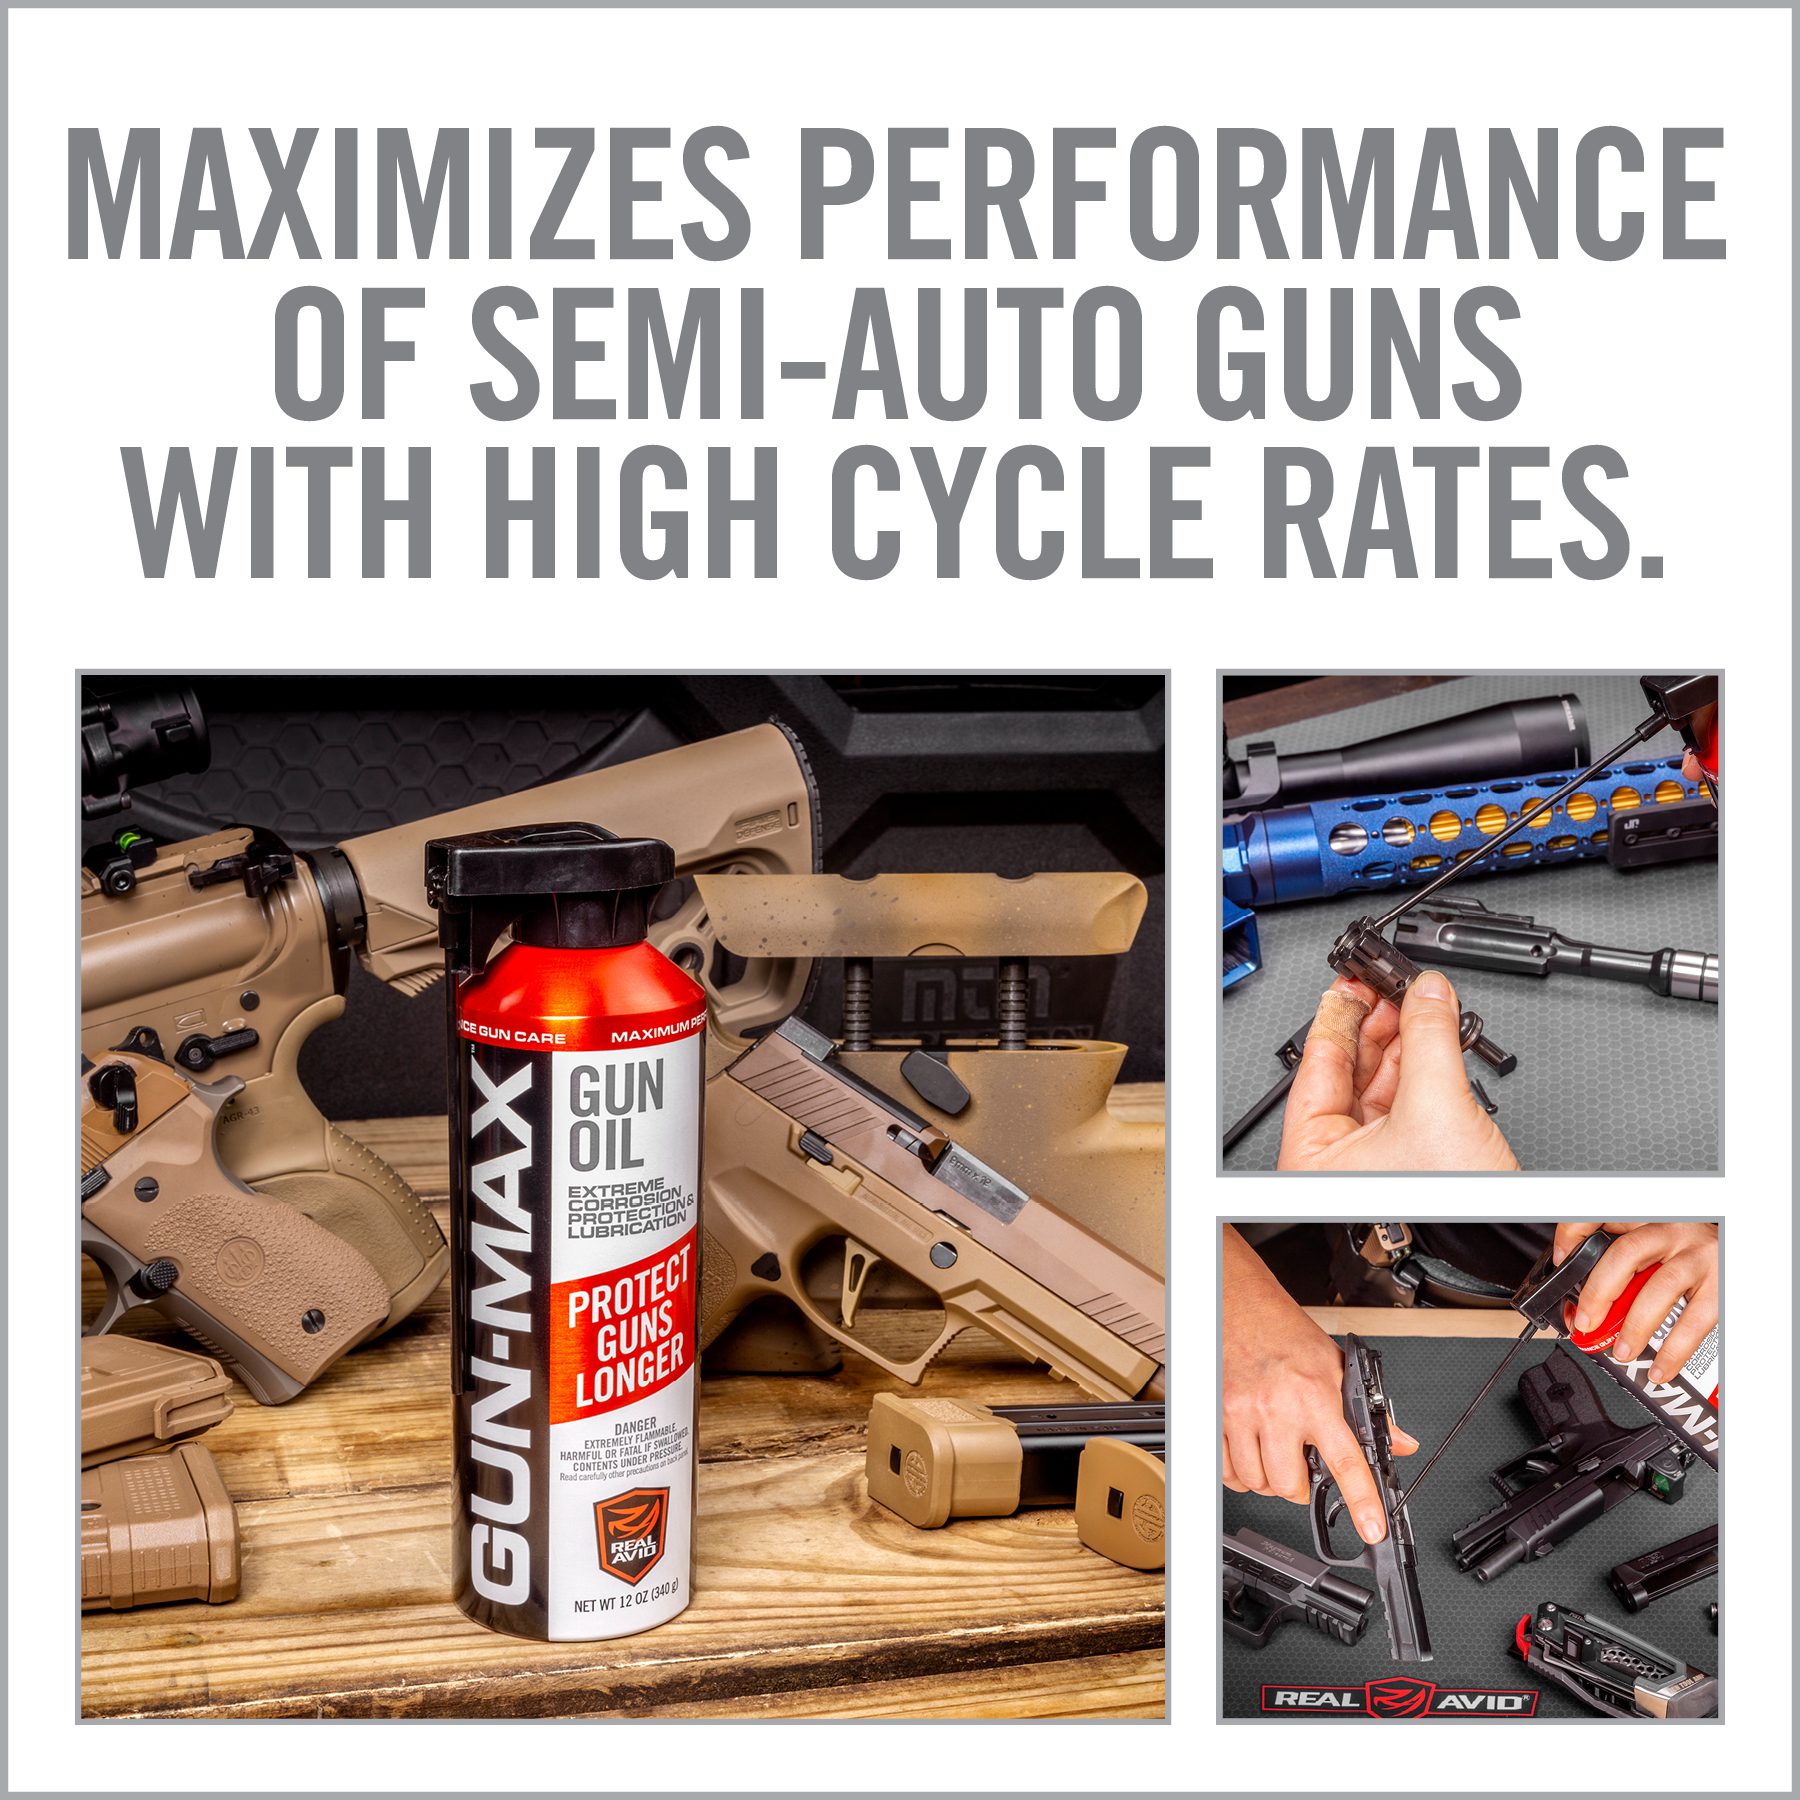 an advertisement for gun oil and guns